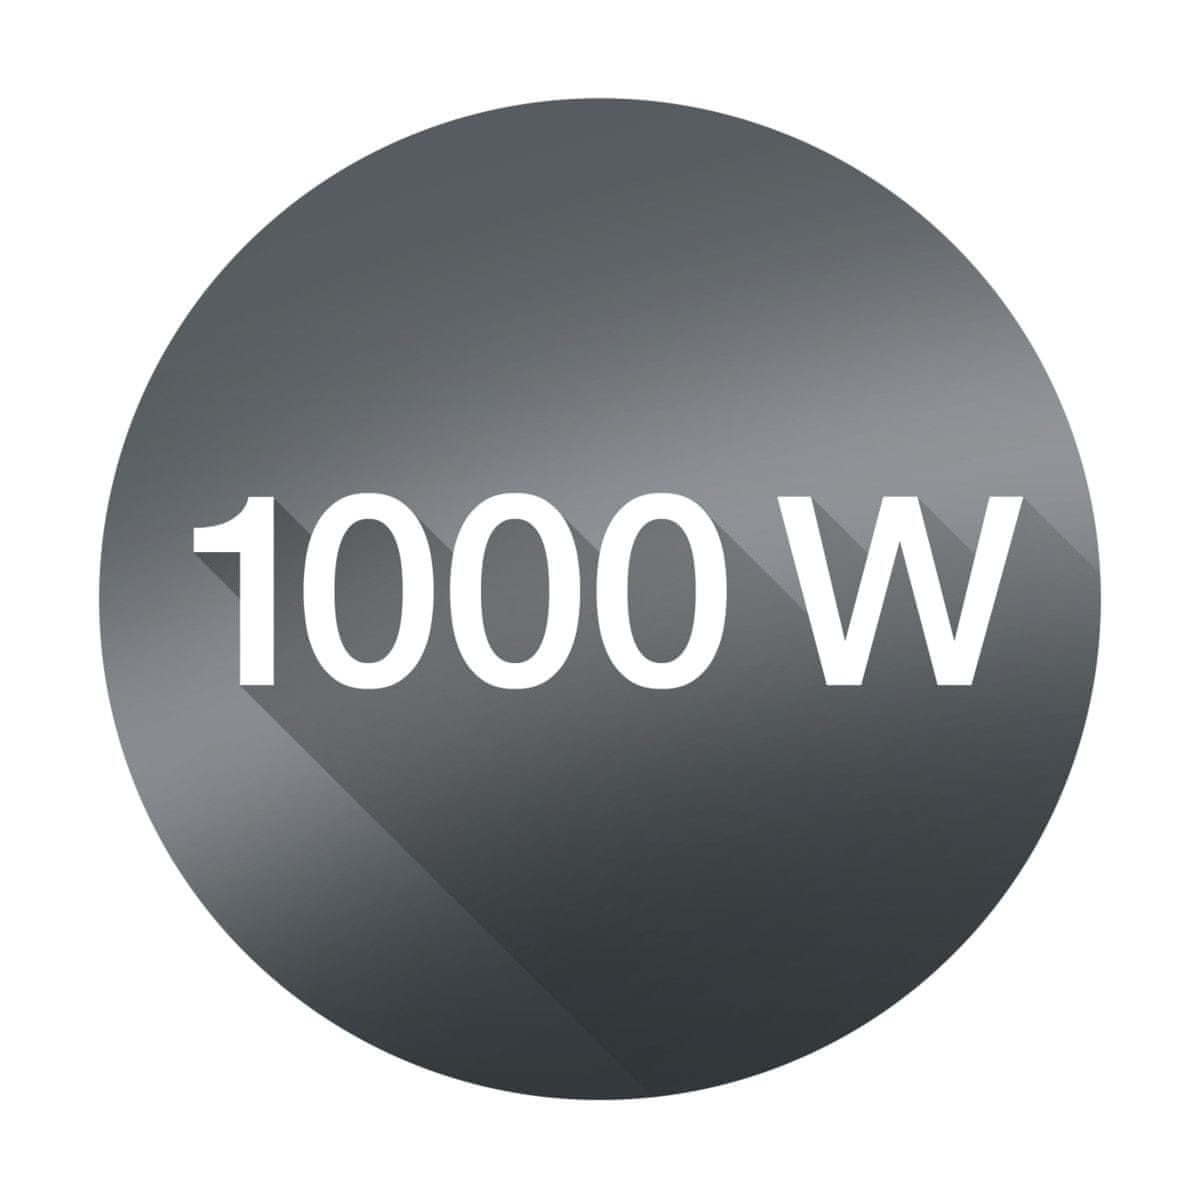 1000 W motor